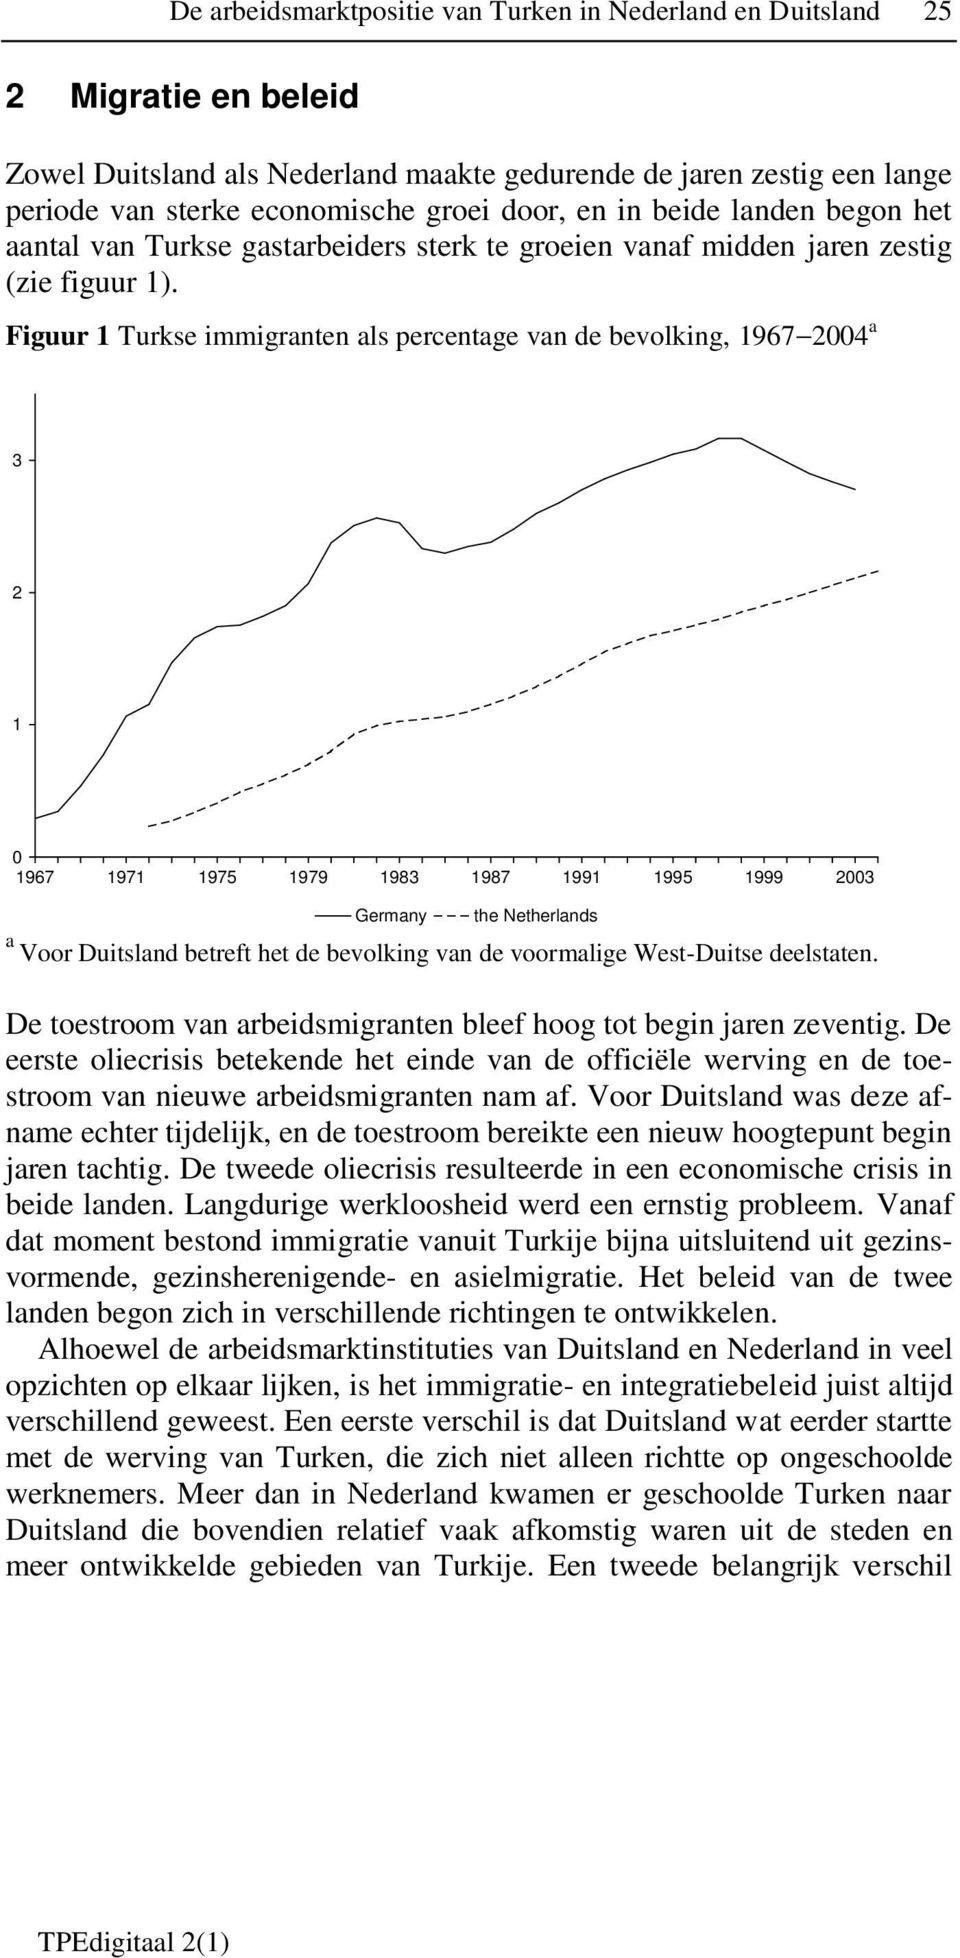 Figuur 1 Turkse immigranten als percentage van de bevolking, 1967 2004 a 3 2 1 0 1967 1971 1975 1979 1983 1987 1991 1995 1999 2003 Germany the Netherlands a Voor Duitsland betreft het de bevolking